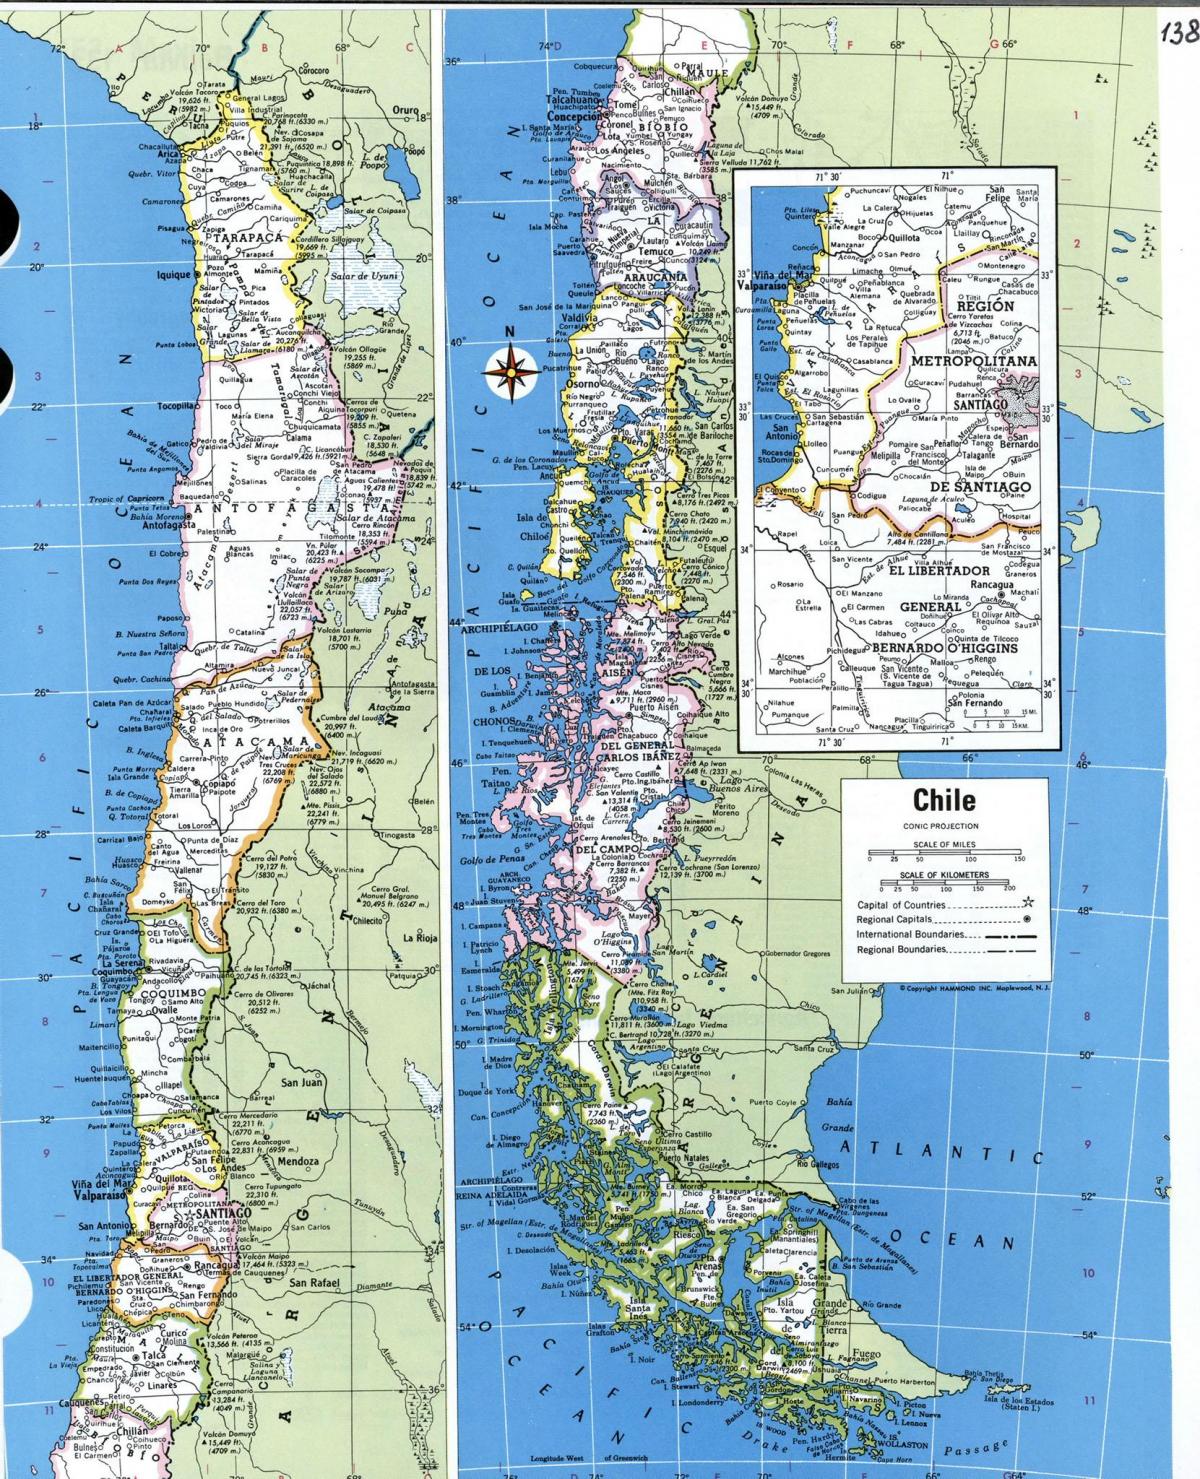 Peta terperinci Chile